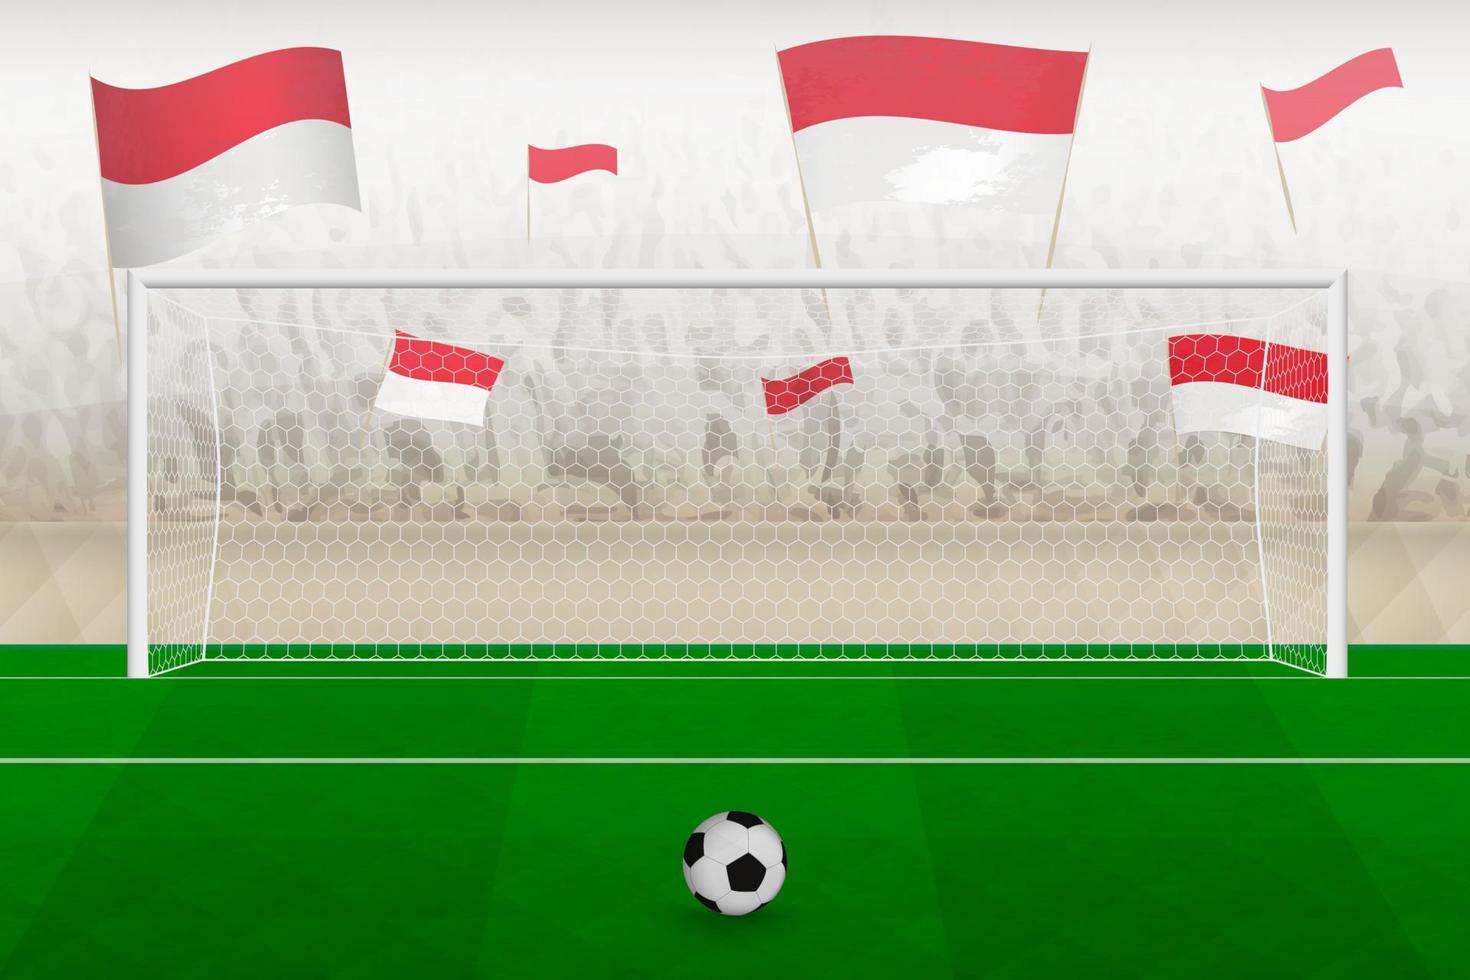 hinchas del equipo de fútbol de mónaco con banderas de mónaco animando en el estadio, concepto de tiro penal en un partido de fútbol. vector